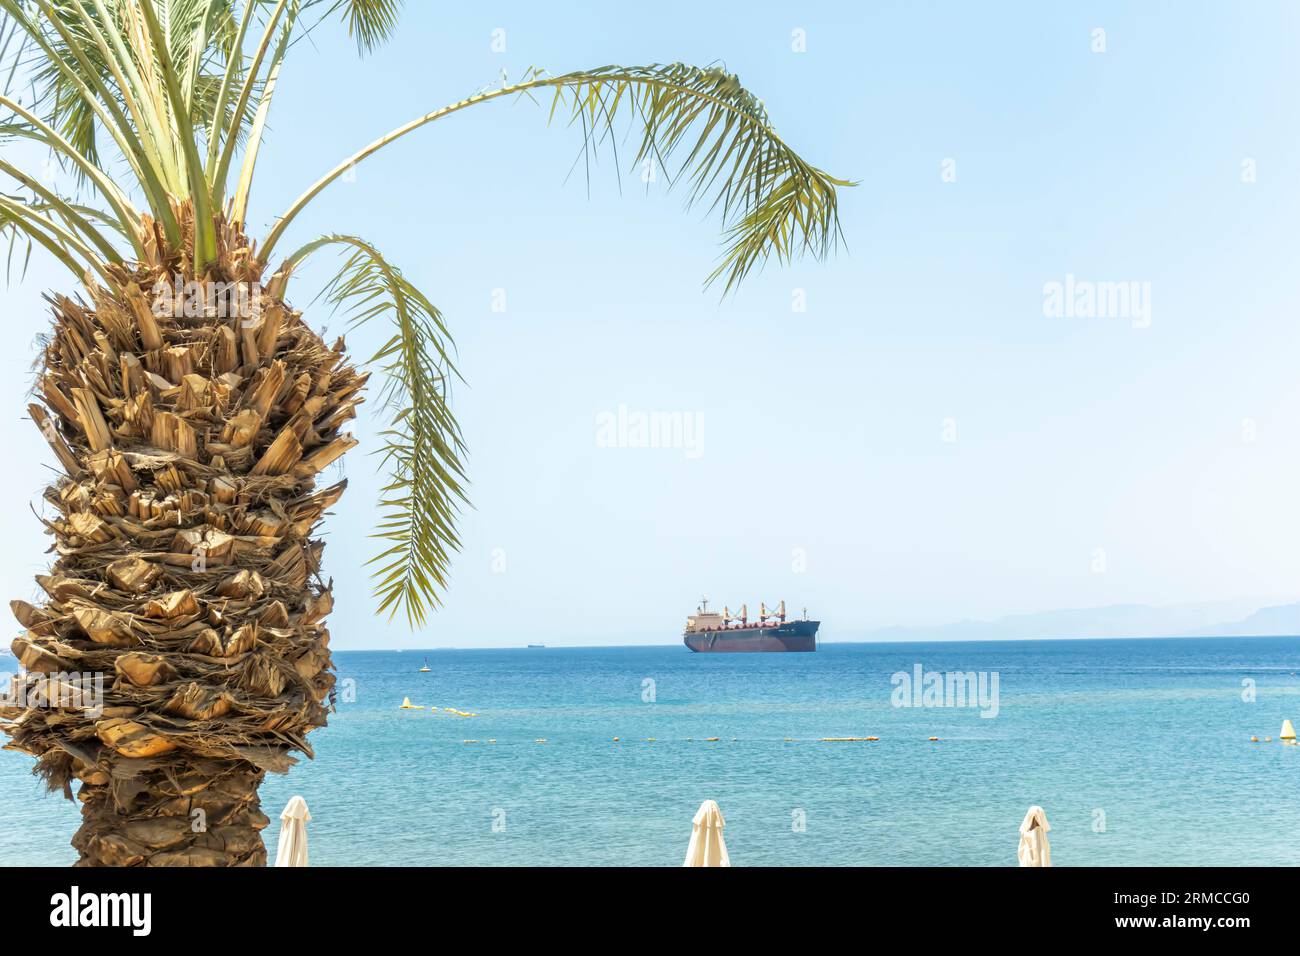 Palmier et cargo dans le golfe d'Aqaba Banque D'Images